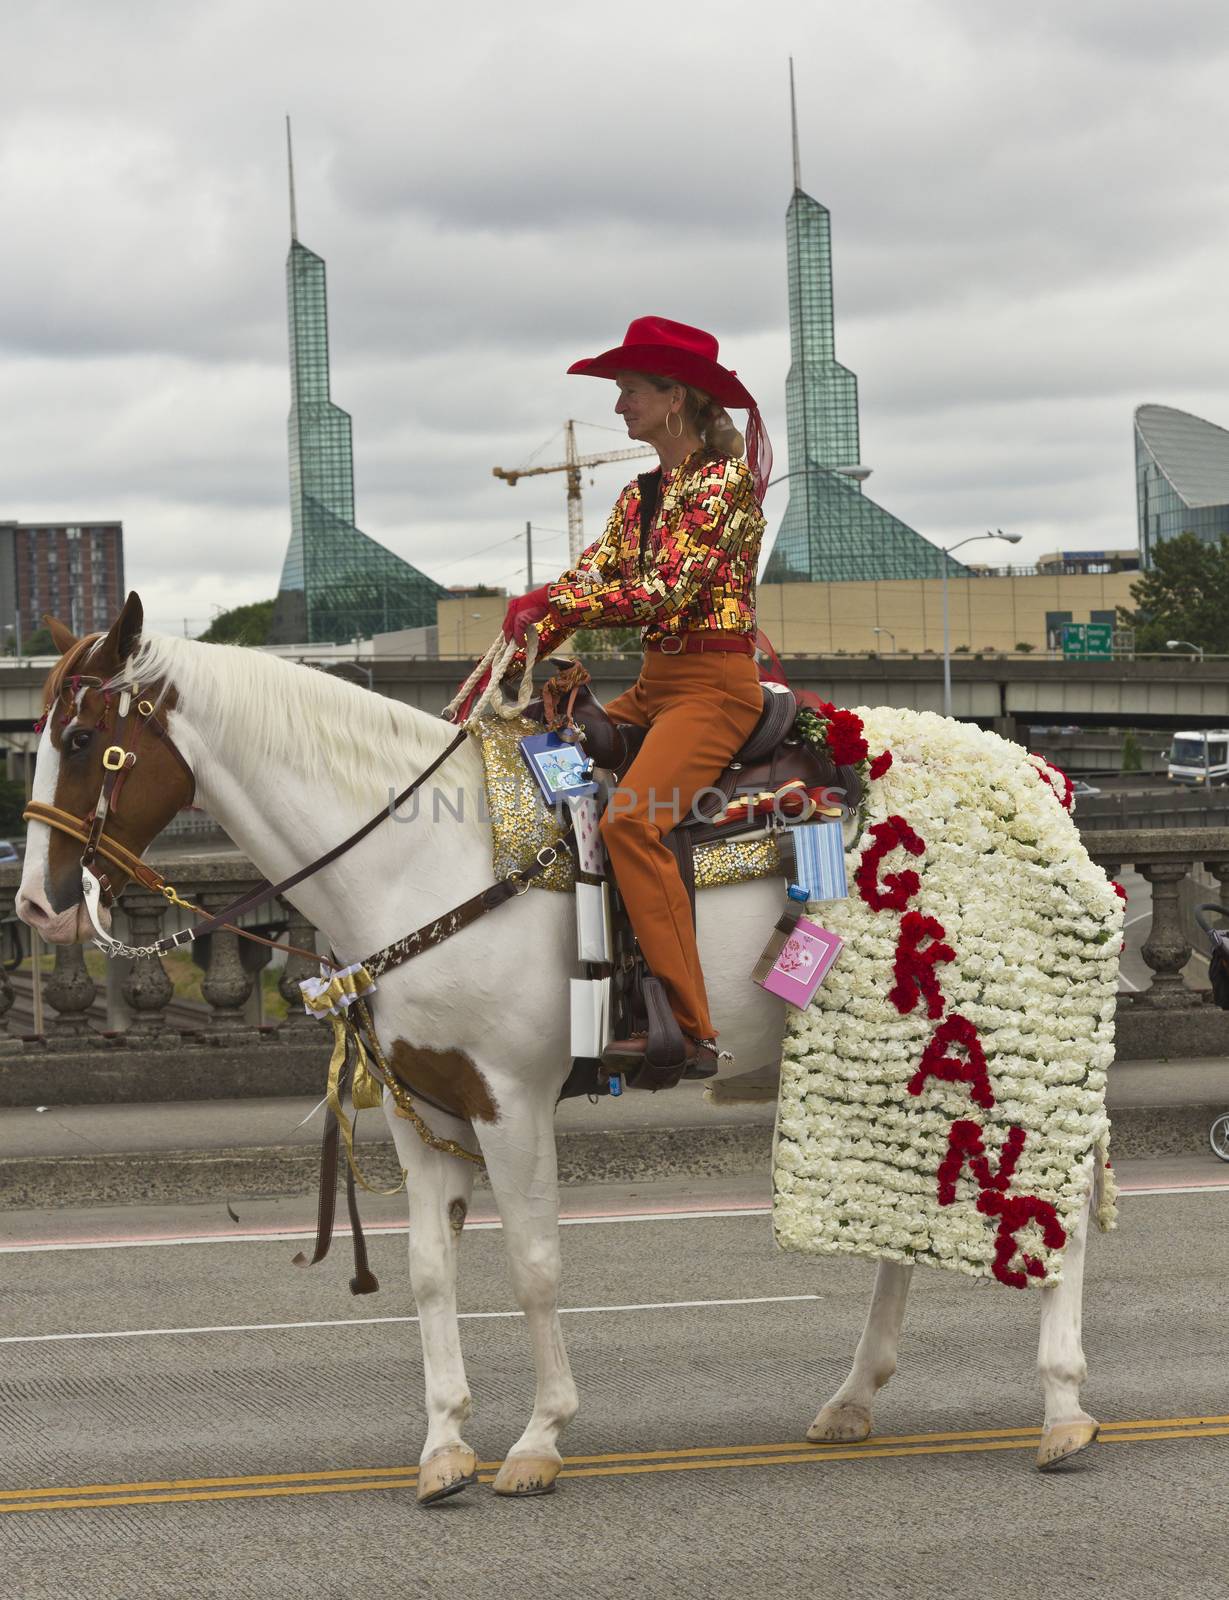 Portland Oregon rose parade. by Rigucci